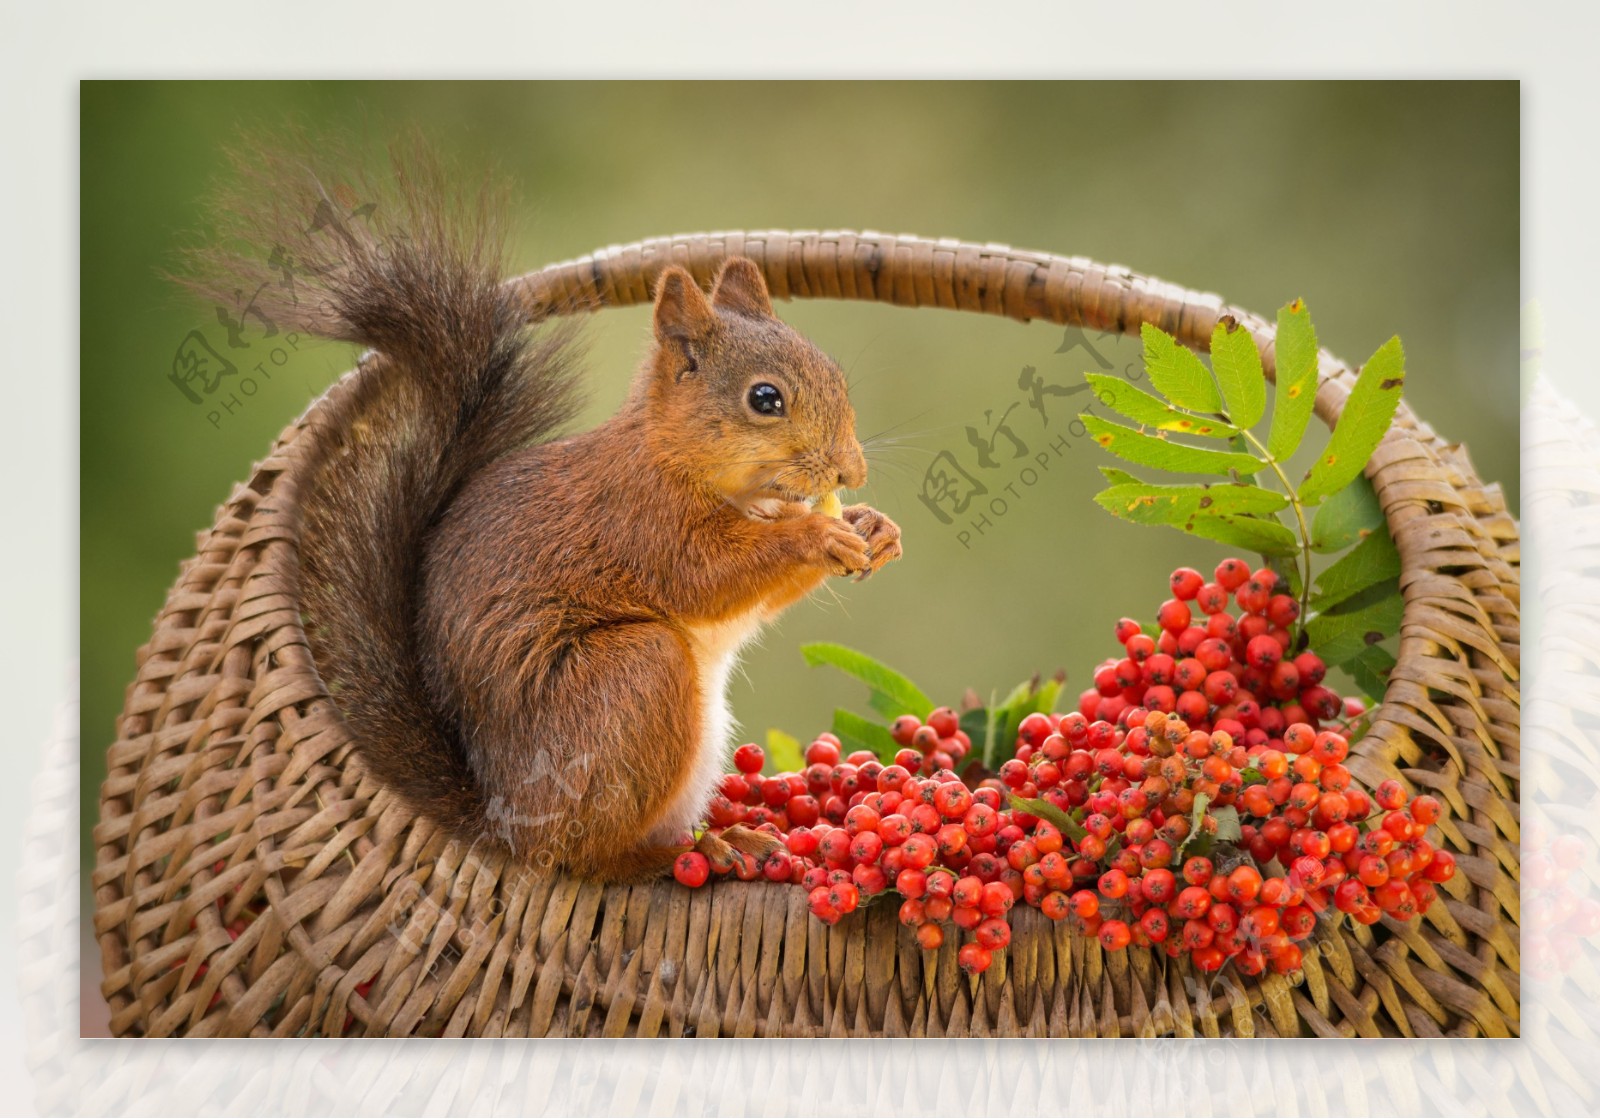 吃红色果子的松鼠图片